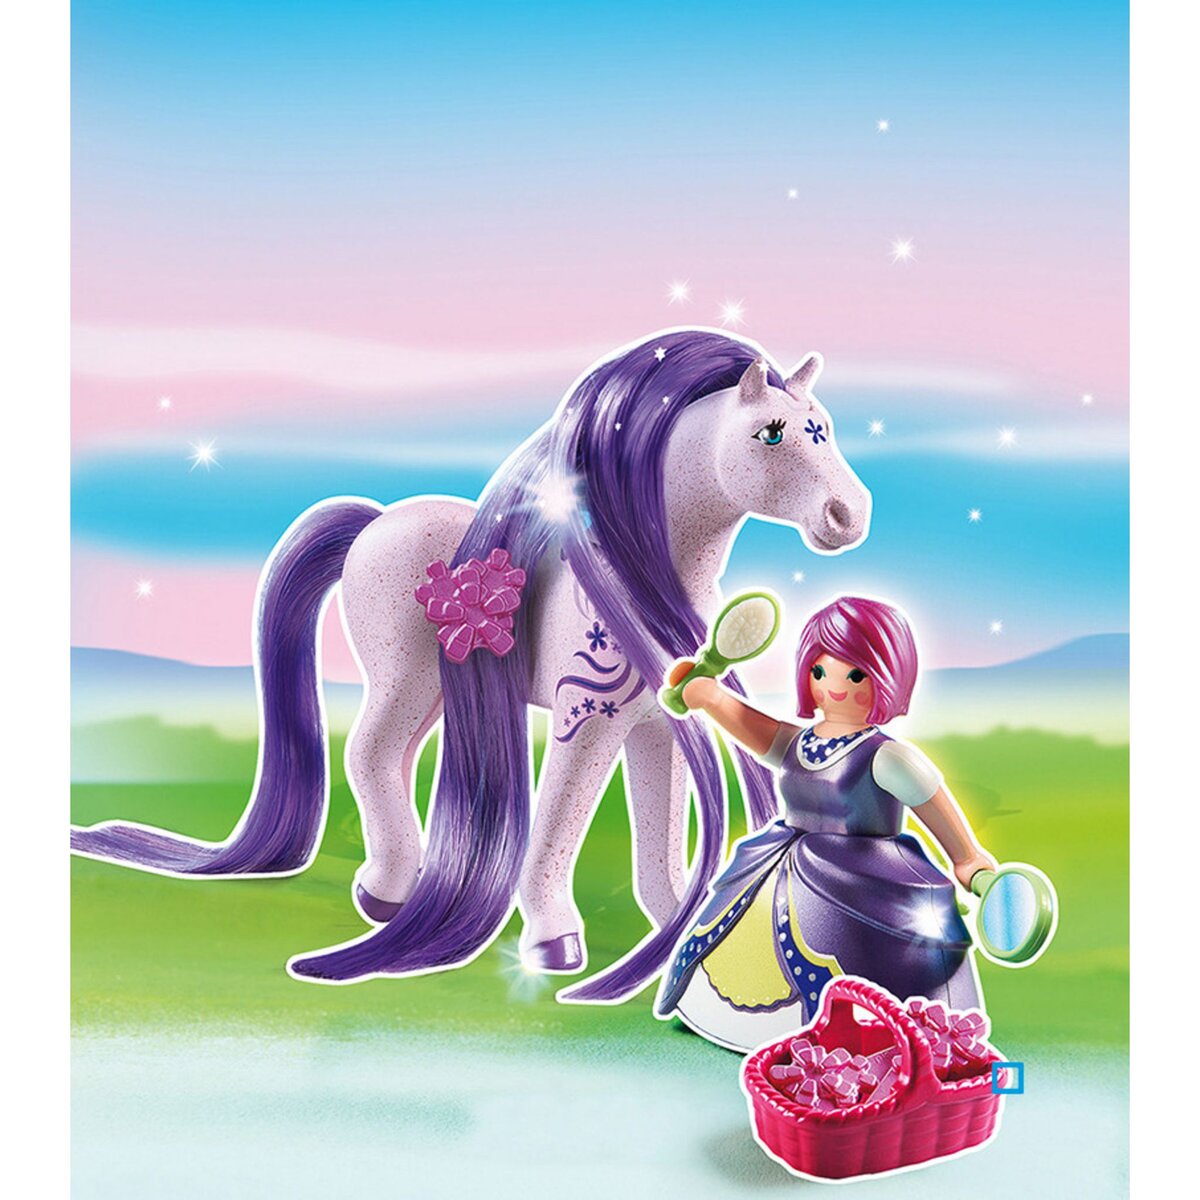 PLAYMOBIL 6167 - Princesse Violette avec cheval à coiffer